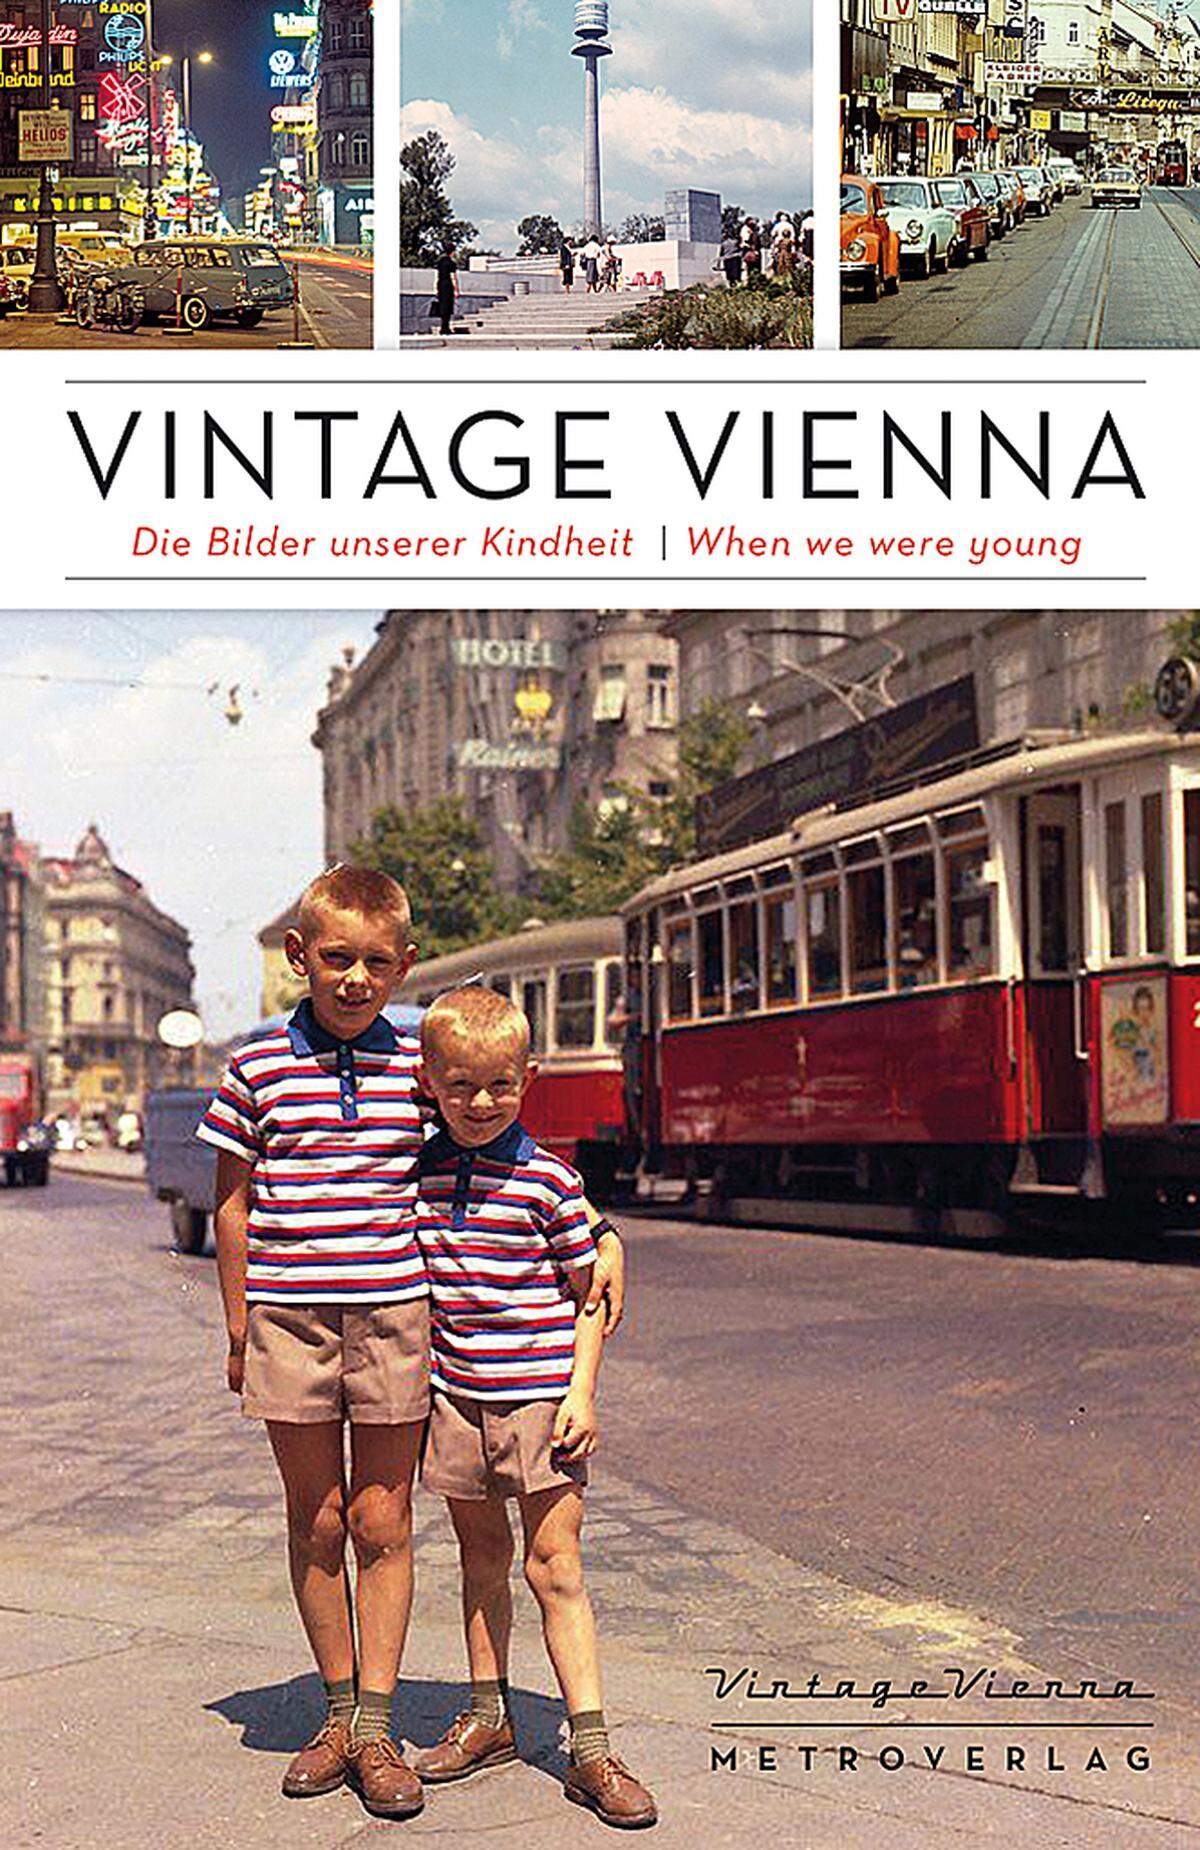 Alles begann mit der Durchforstung der eigenen Familienalben, begleitet von die Geschichten der Eltern und Großeltern über das Wien früherer Jahrzehnte. Der Fotoblog Vintage Vienna löste eine Nostalgie-Euphorie bei Benutzern und Medien aus. Das gleichnamige Buch wurde ein großer Erfolg.Nach dem Schwestern-Blog "Vintage Alps" starteten ...